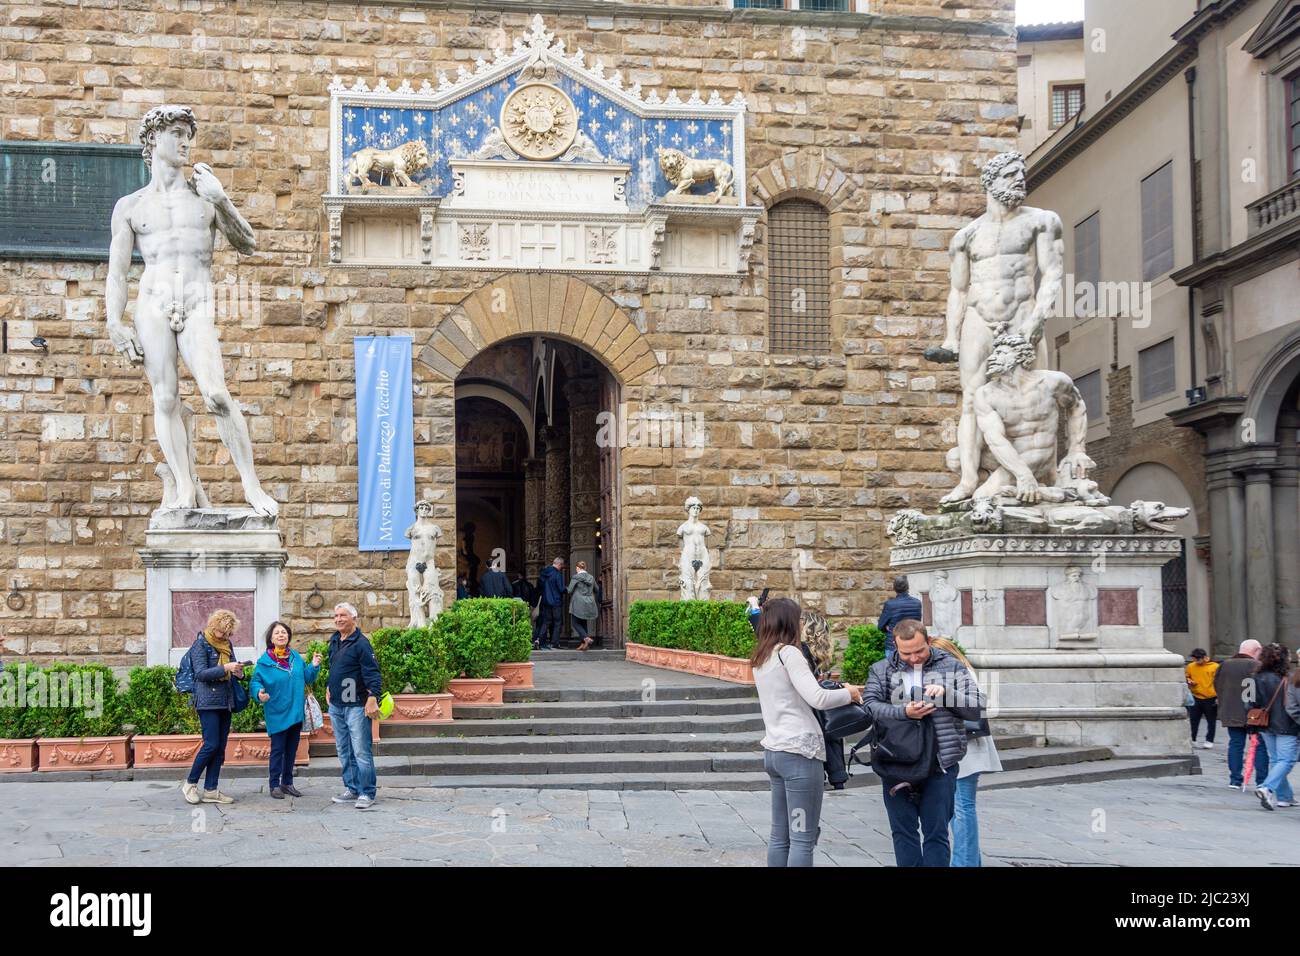 Statue de David à l'entrée du Palazzo Vecchio, Piazza della Signoria, Florence (Firenze), région Toscane, Italie Banque D'Images